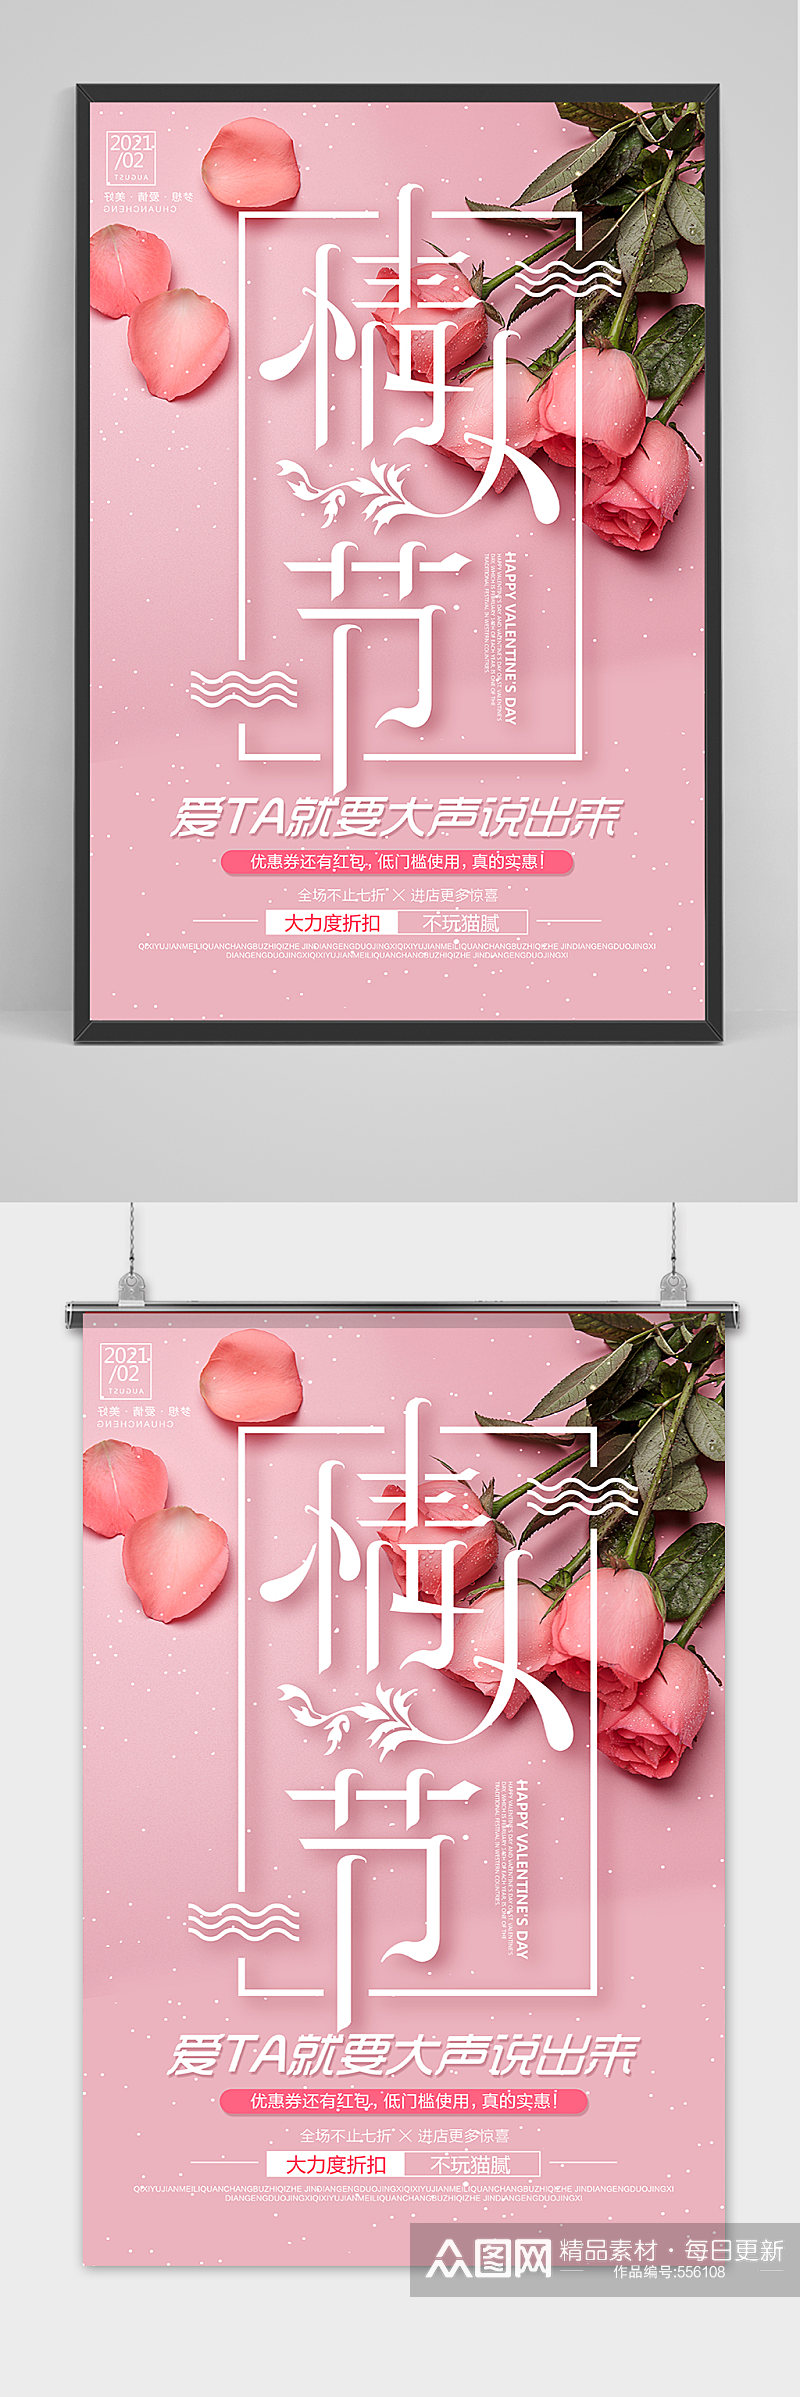 粉色情人节简单设计海报模版素材